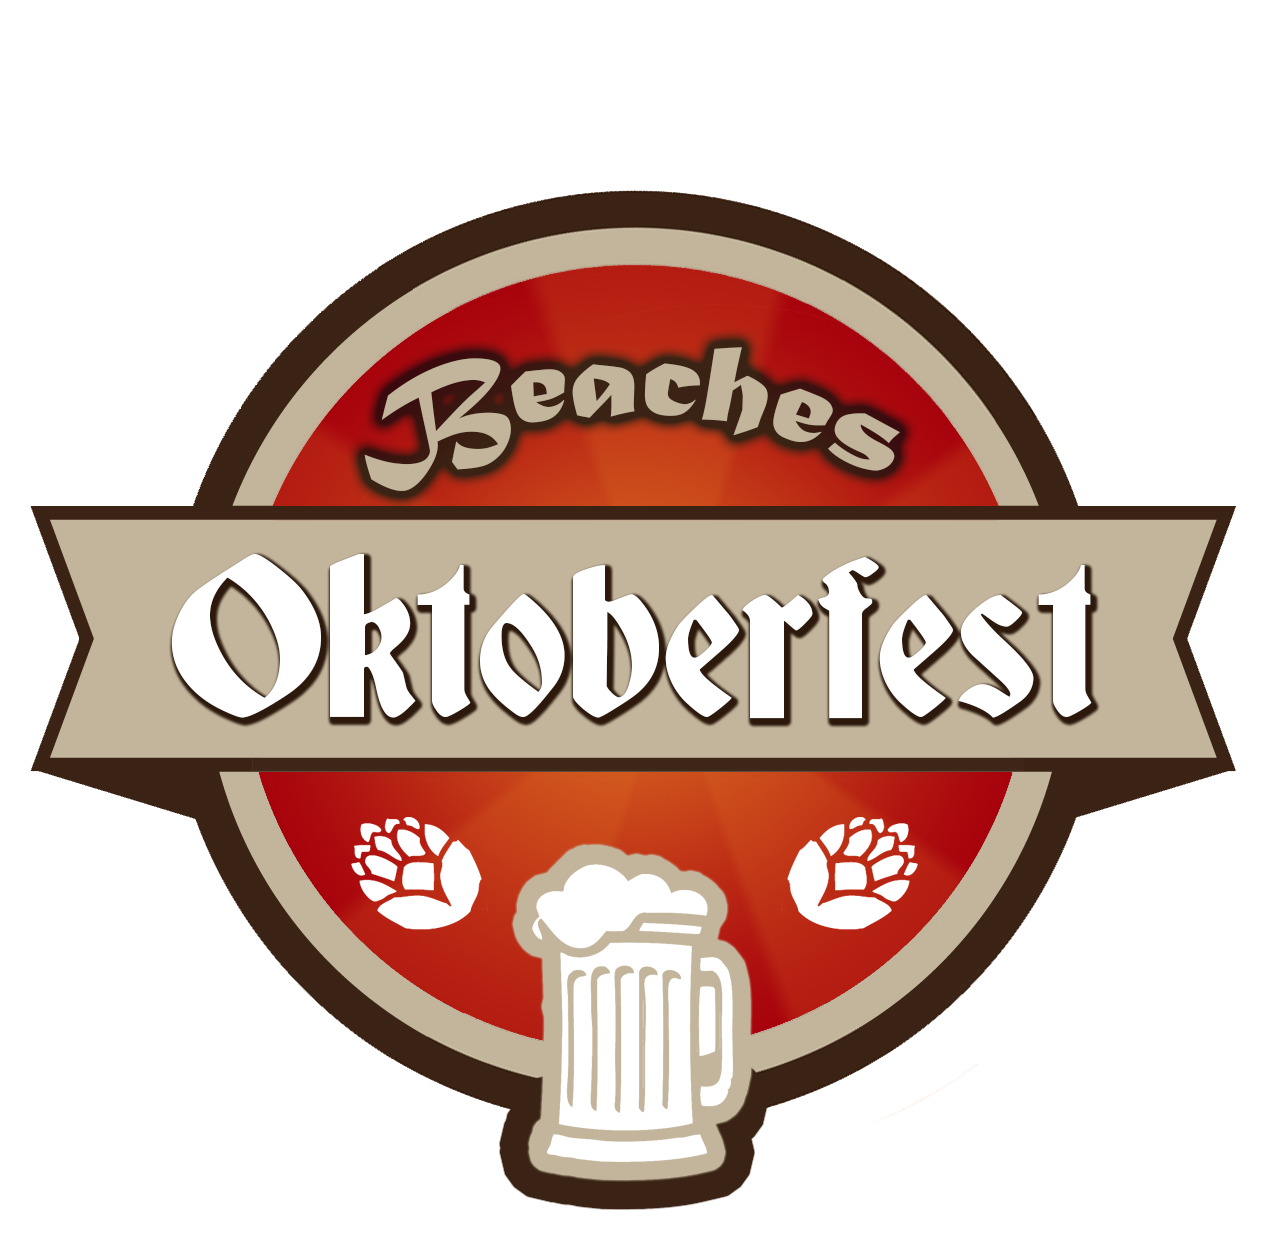 Beaches Oktoberfest